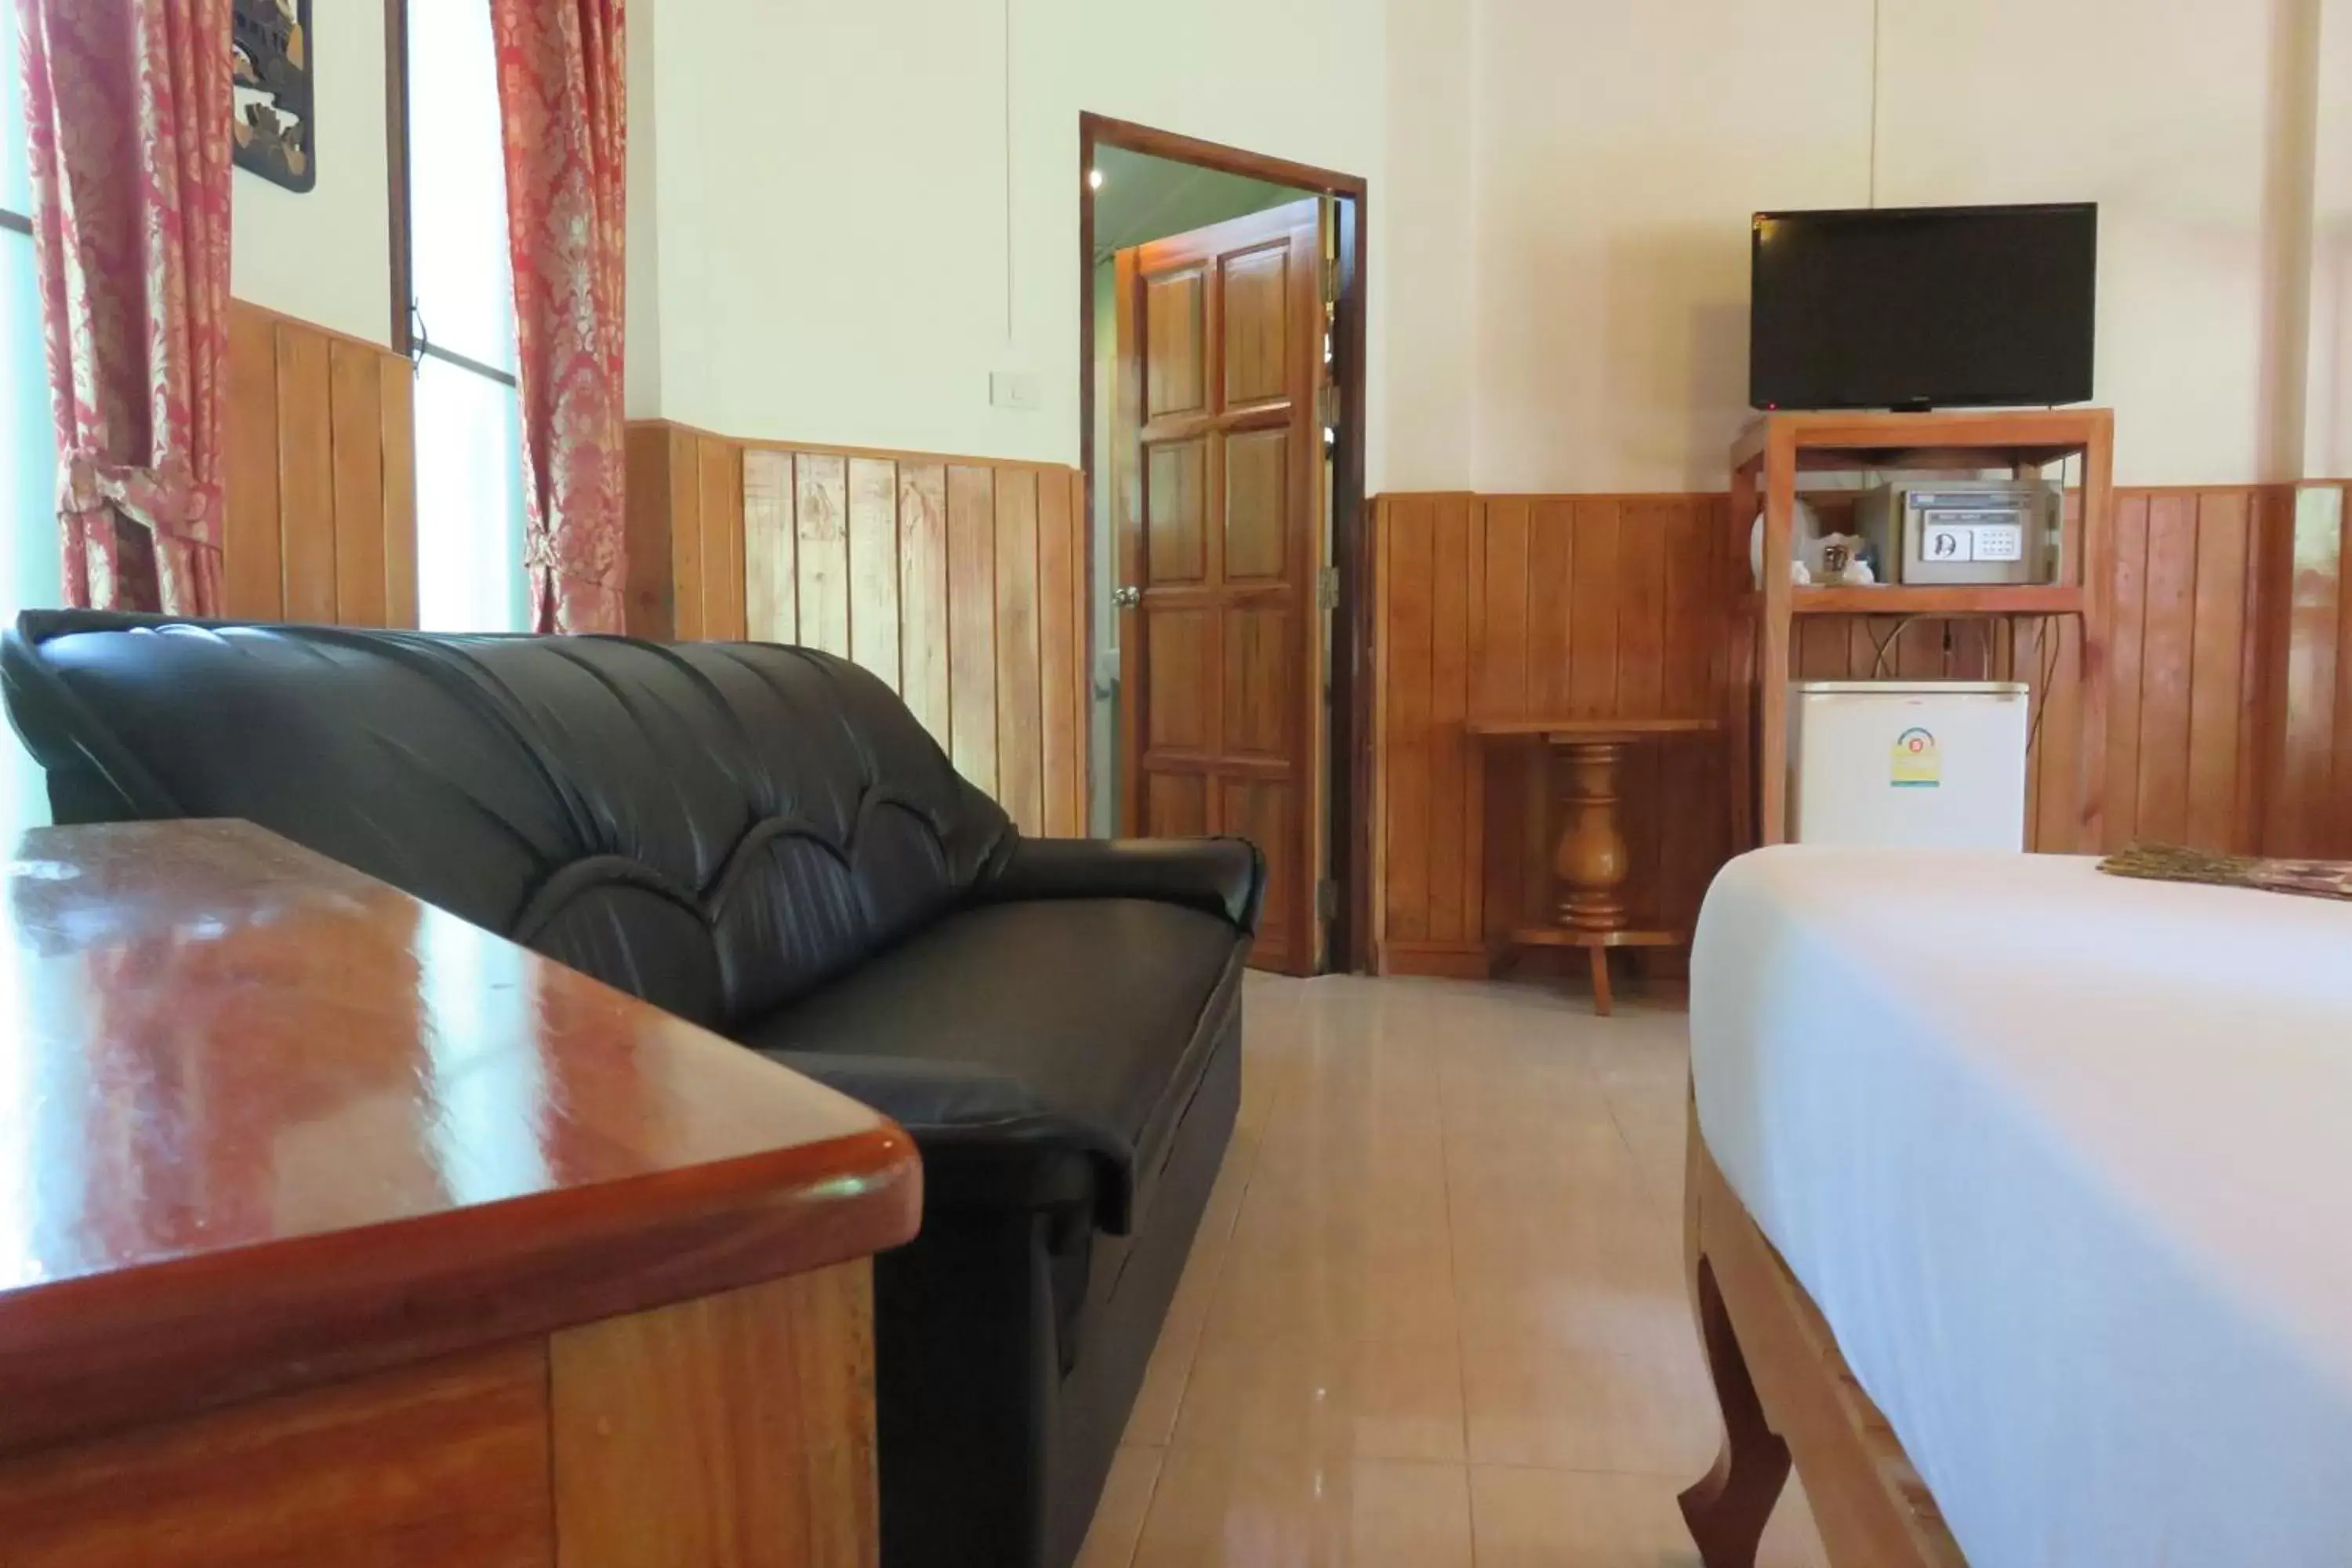 Bedroom, Lounge/Bar in Macura Resort